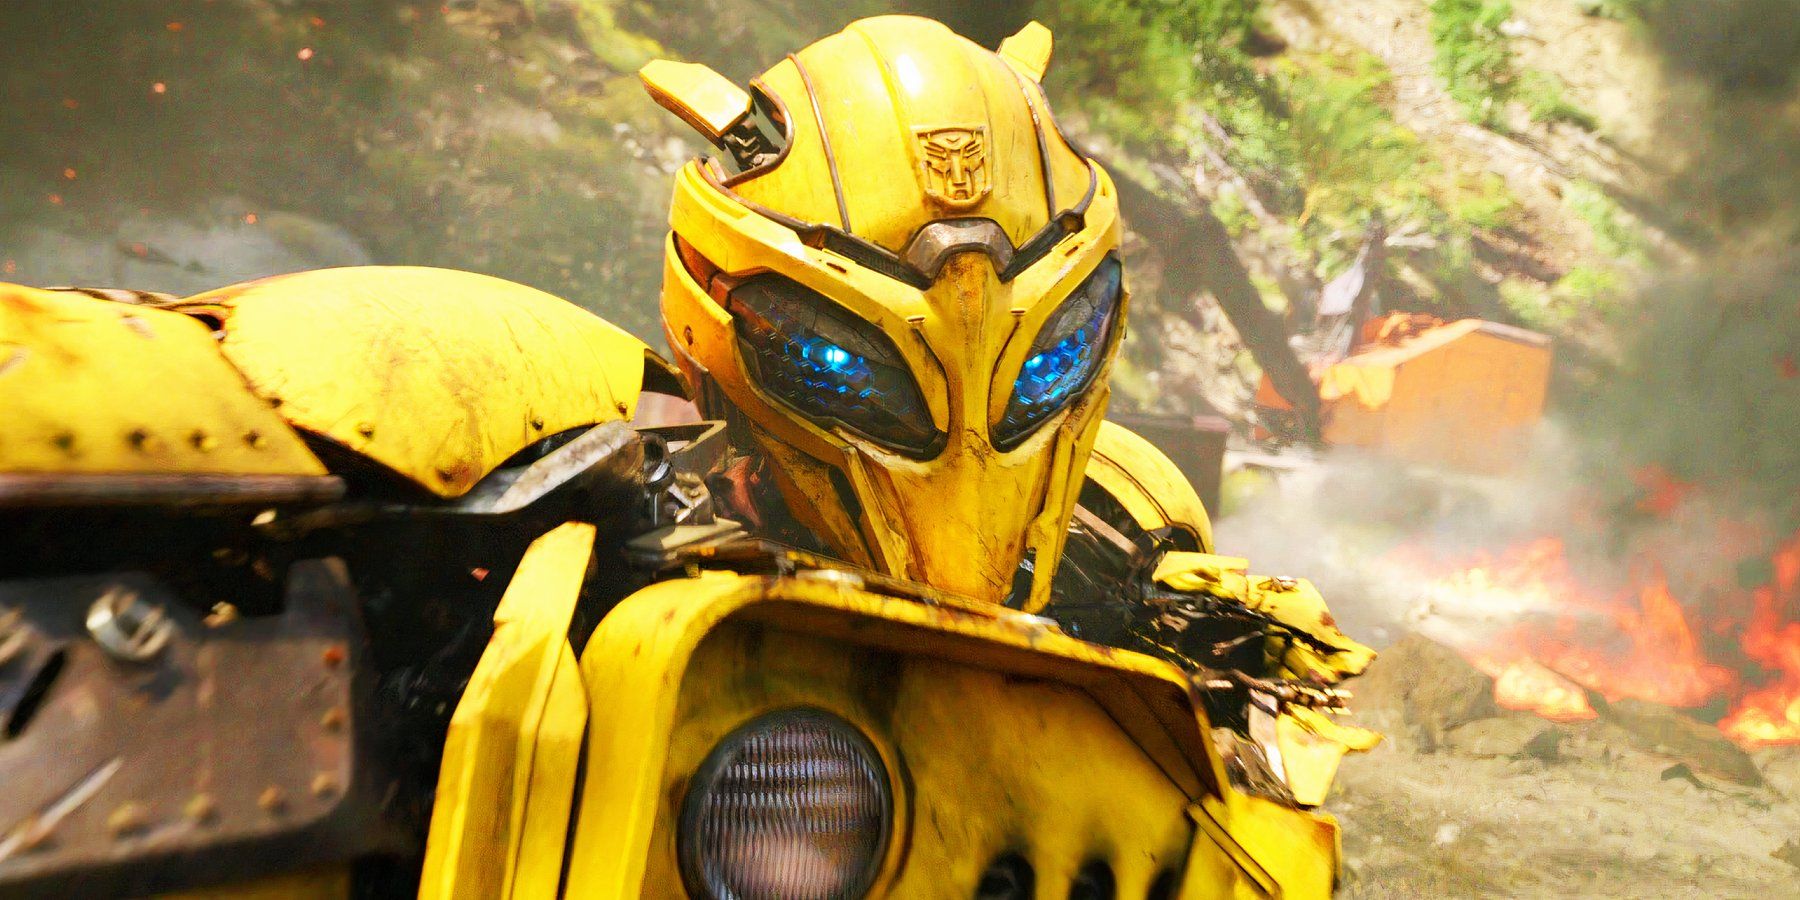 El vídeo de cosplay de Bumblebee de Transformers es uno de los disfraces más impresionantes que jamás hayas visto